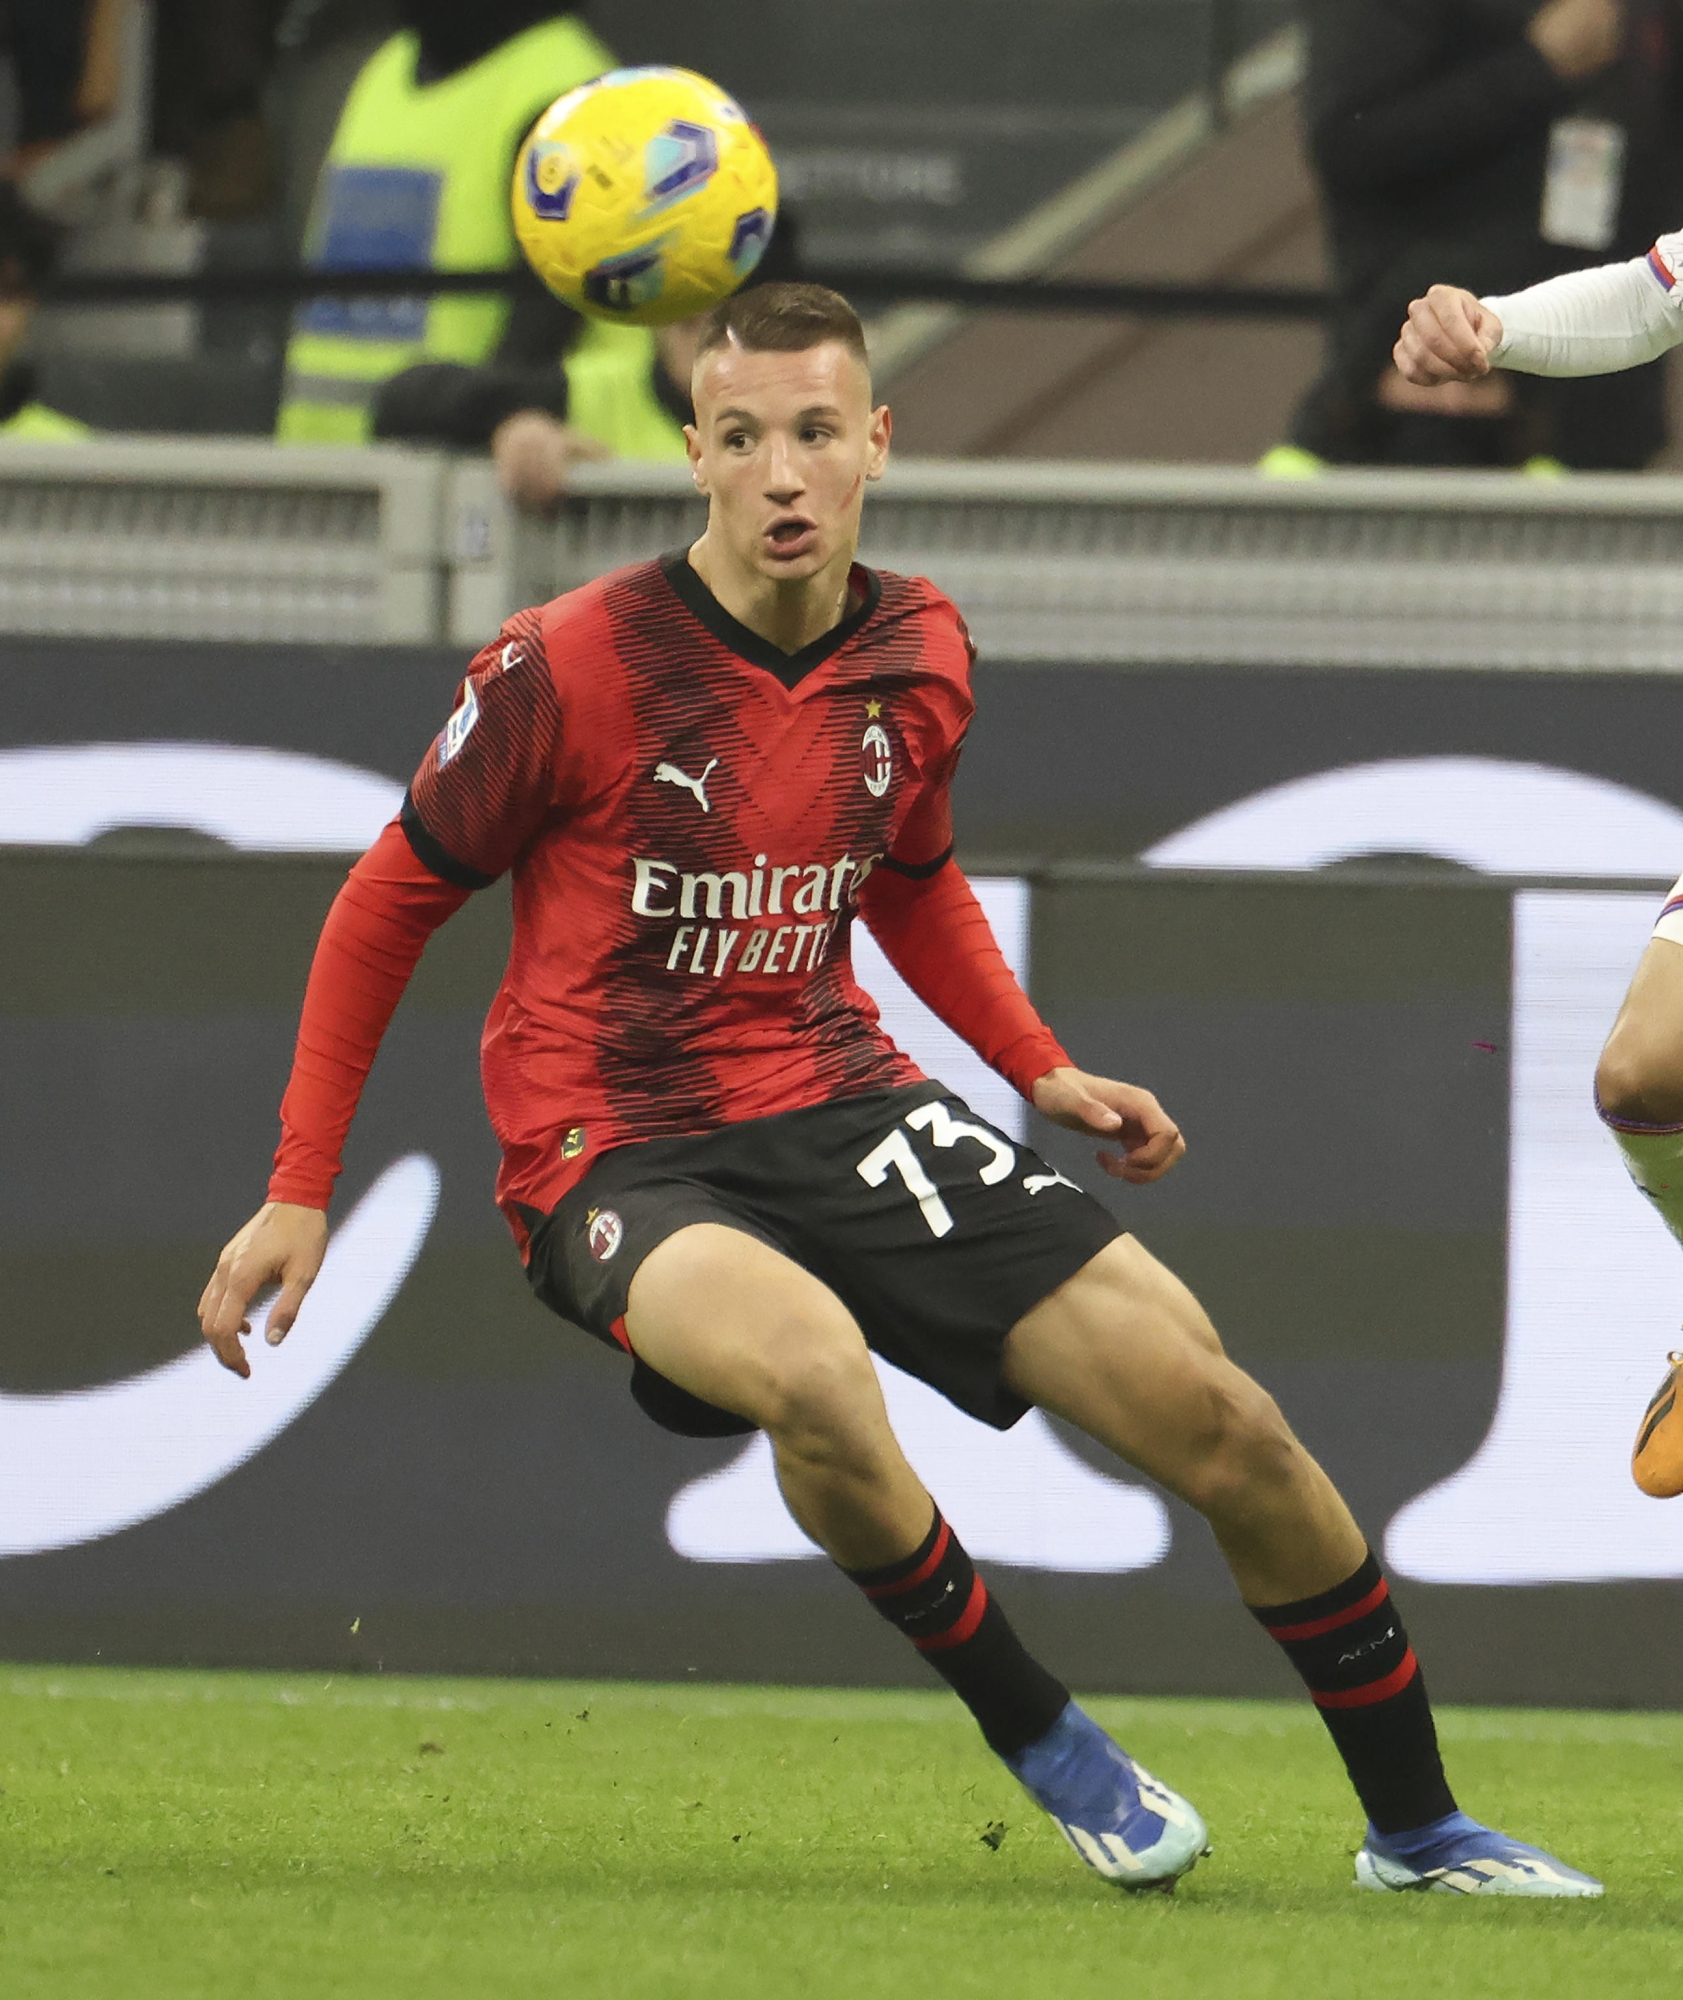 Milan, Camarda pronto al debutto con la Fiorentina: chi è